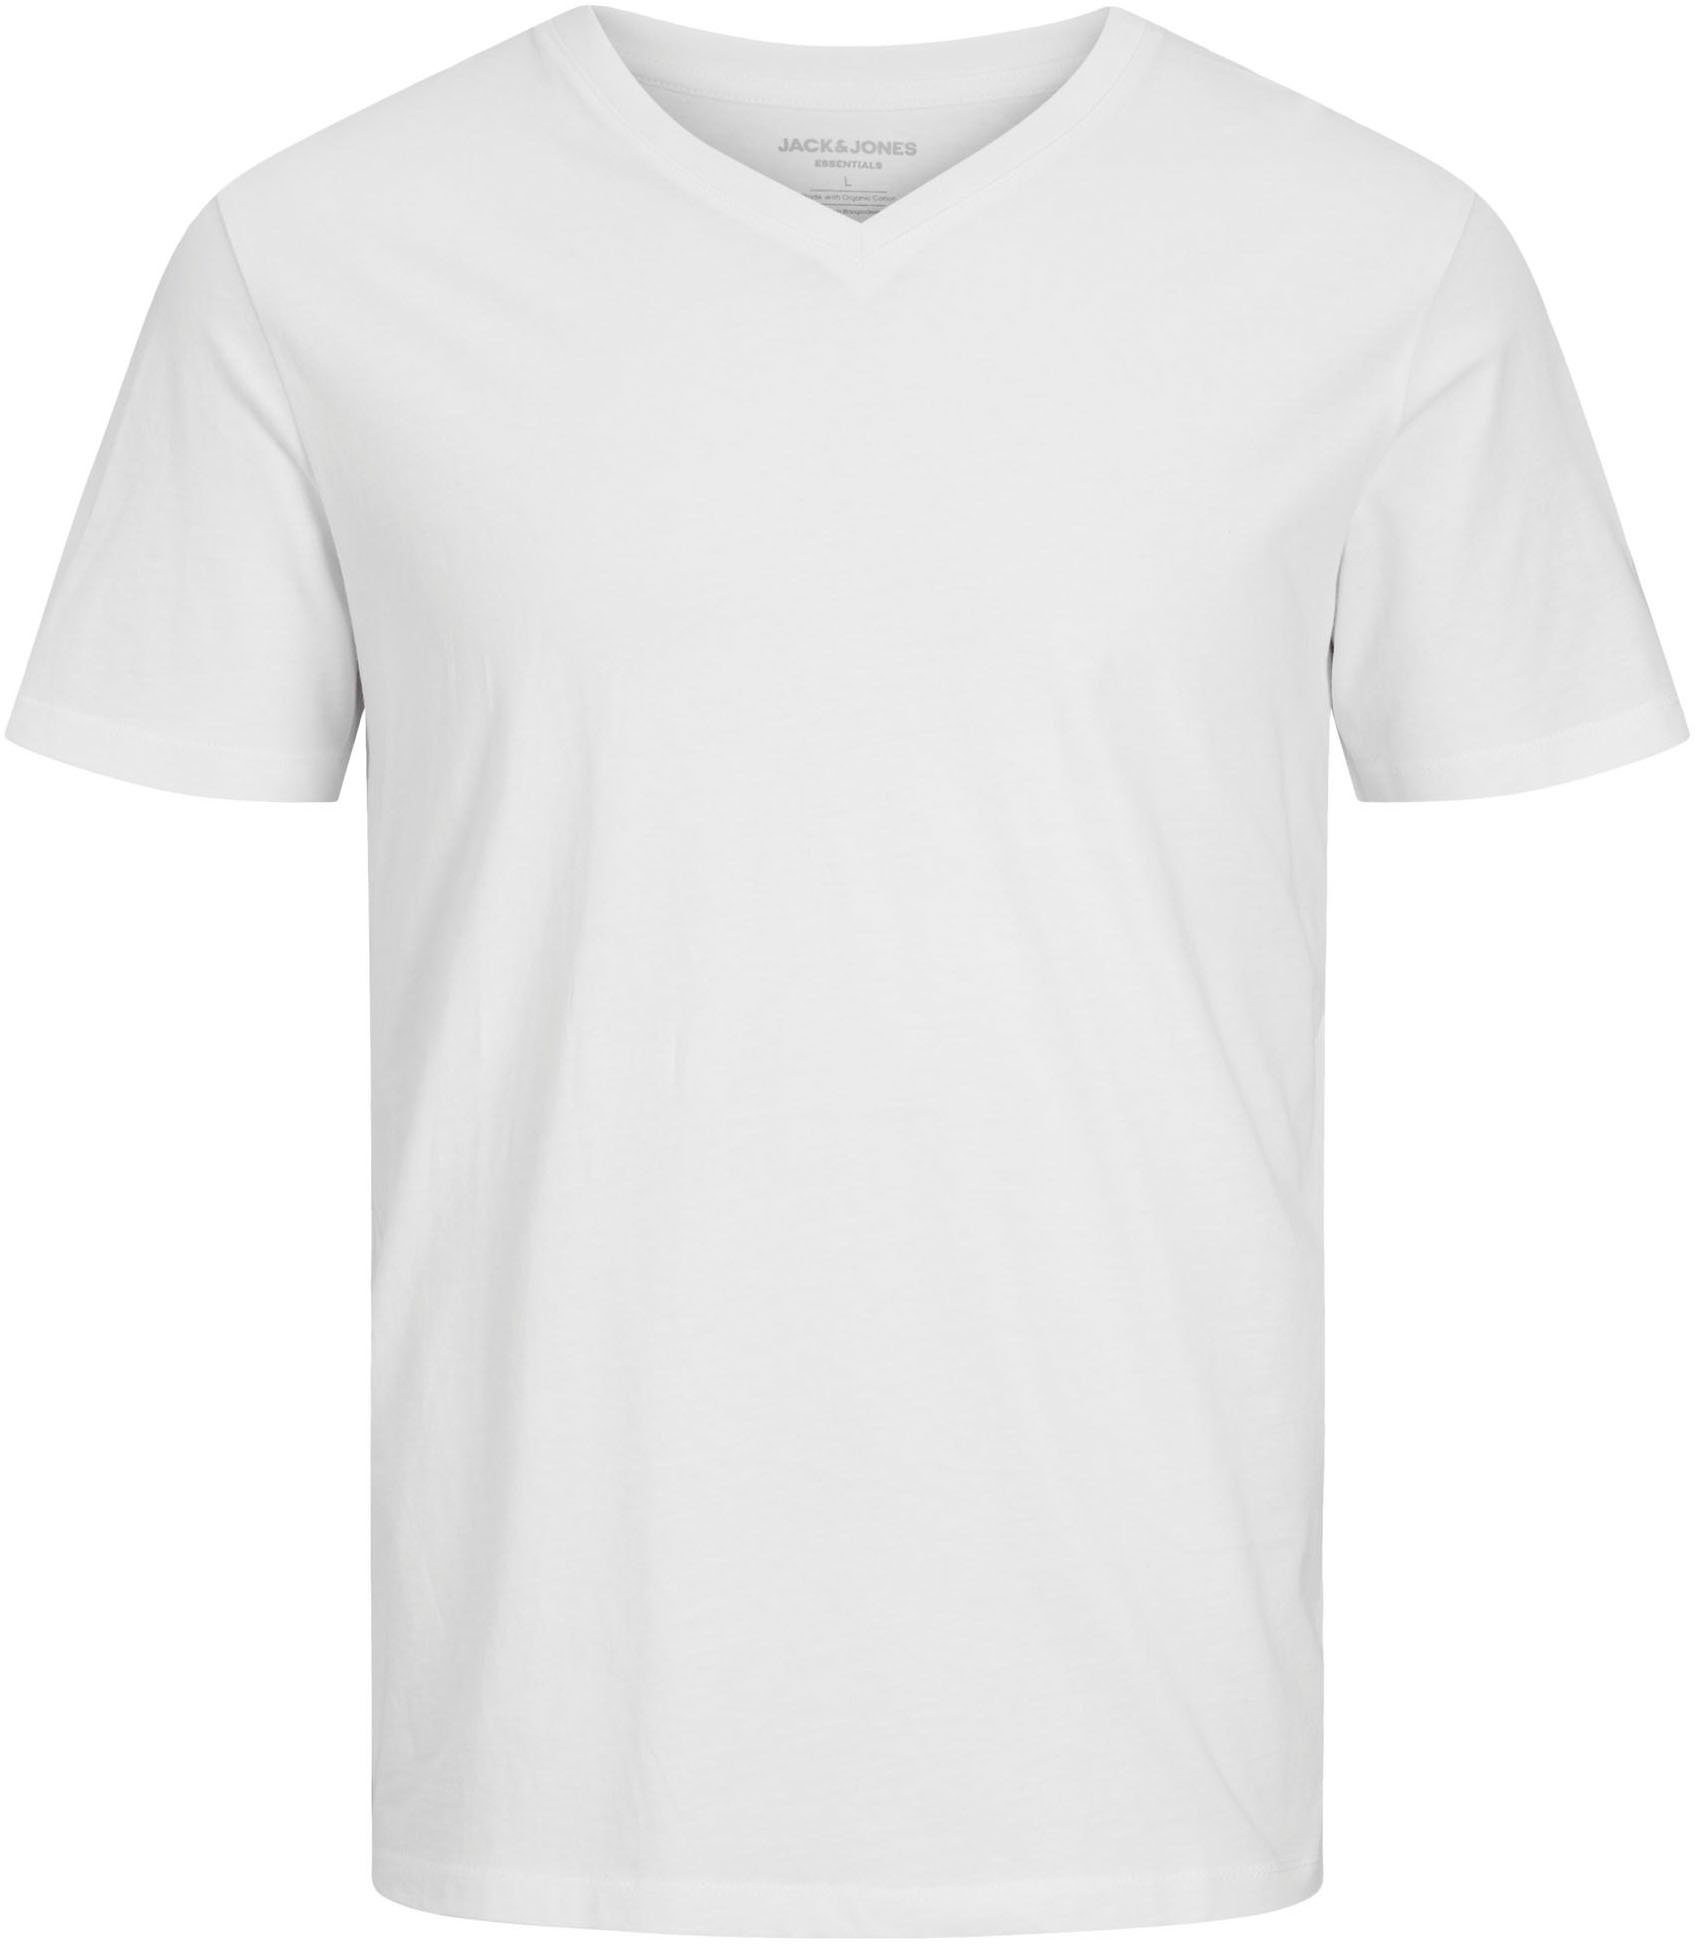 Jack & Jones BASIC white JJEORGANIC TEE V-Shirt